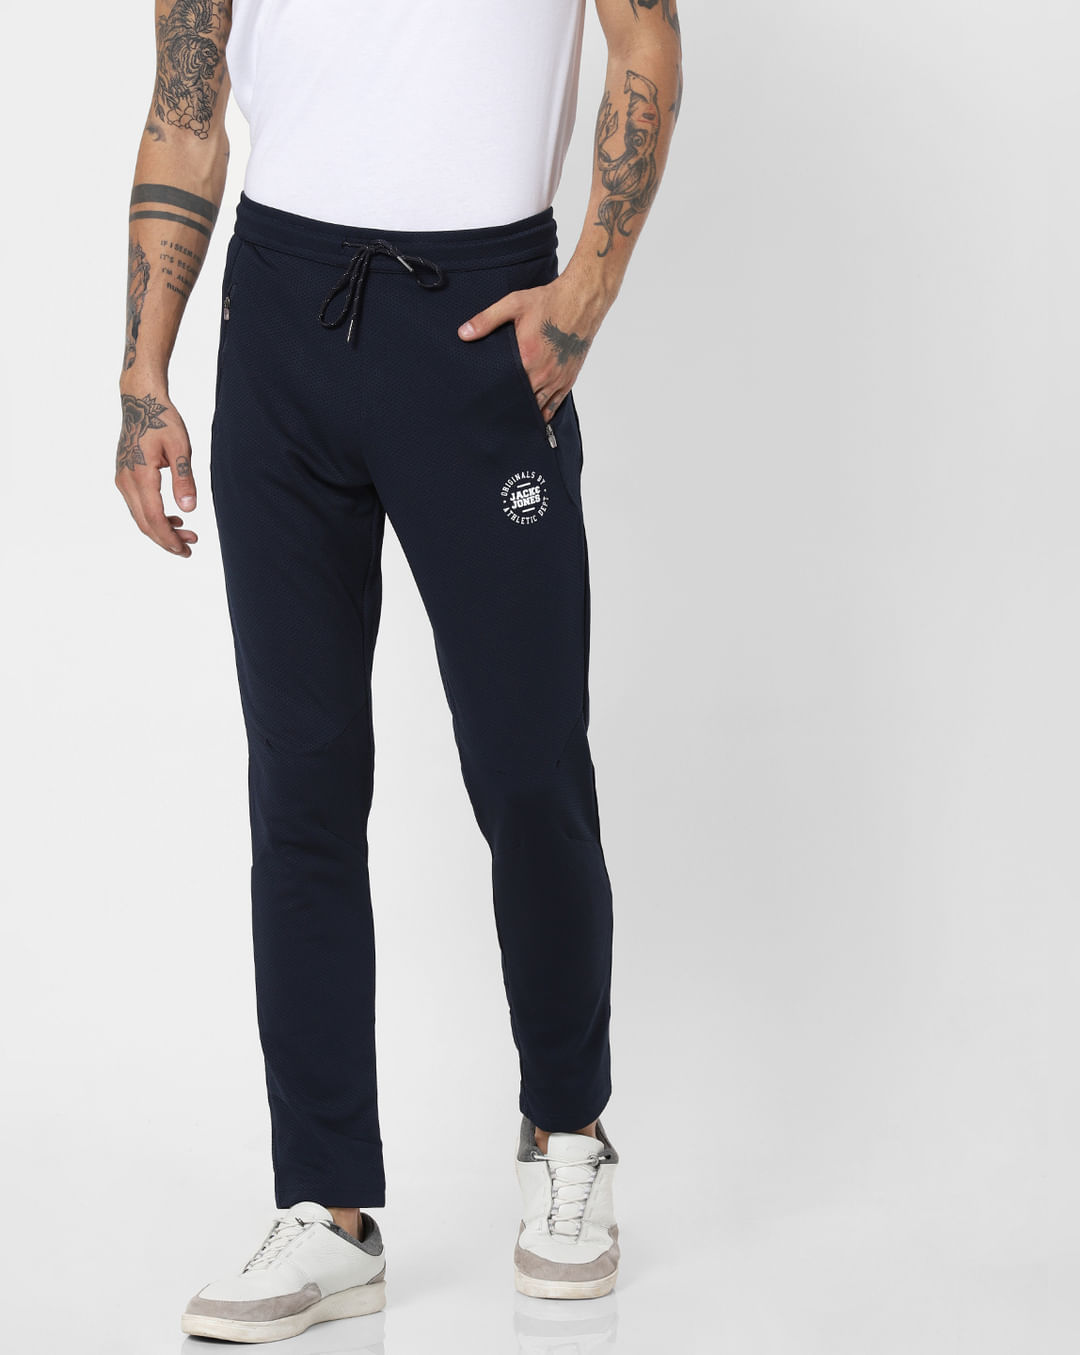 Buy Men Navy Blue Textured Trackpants Online